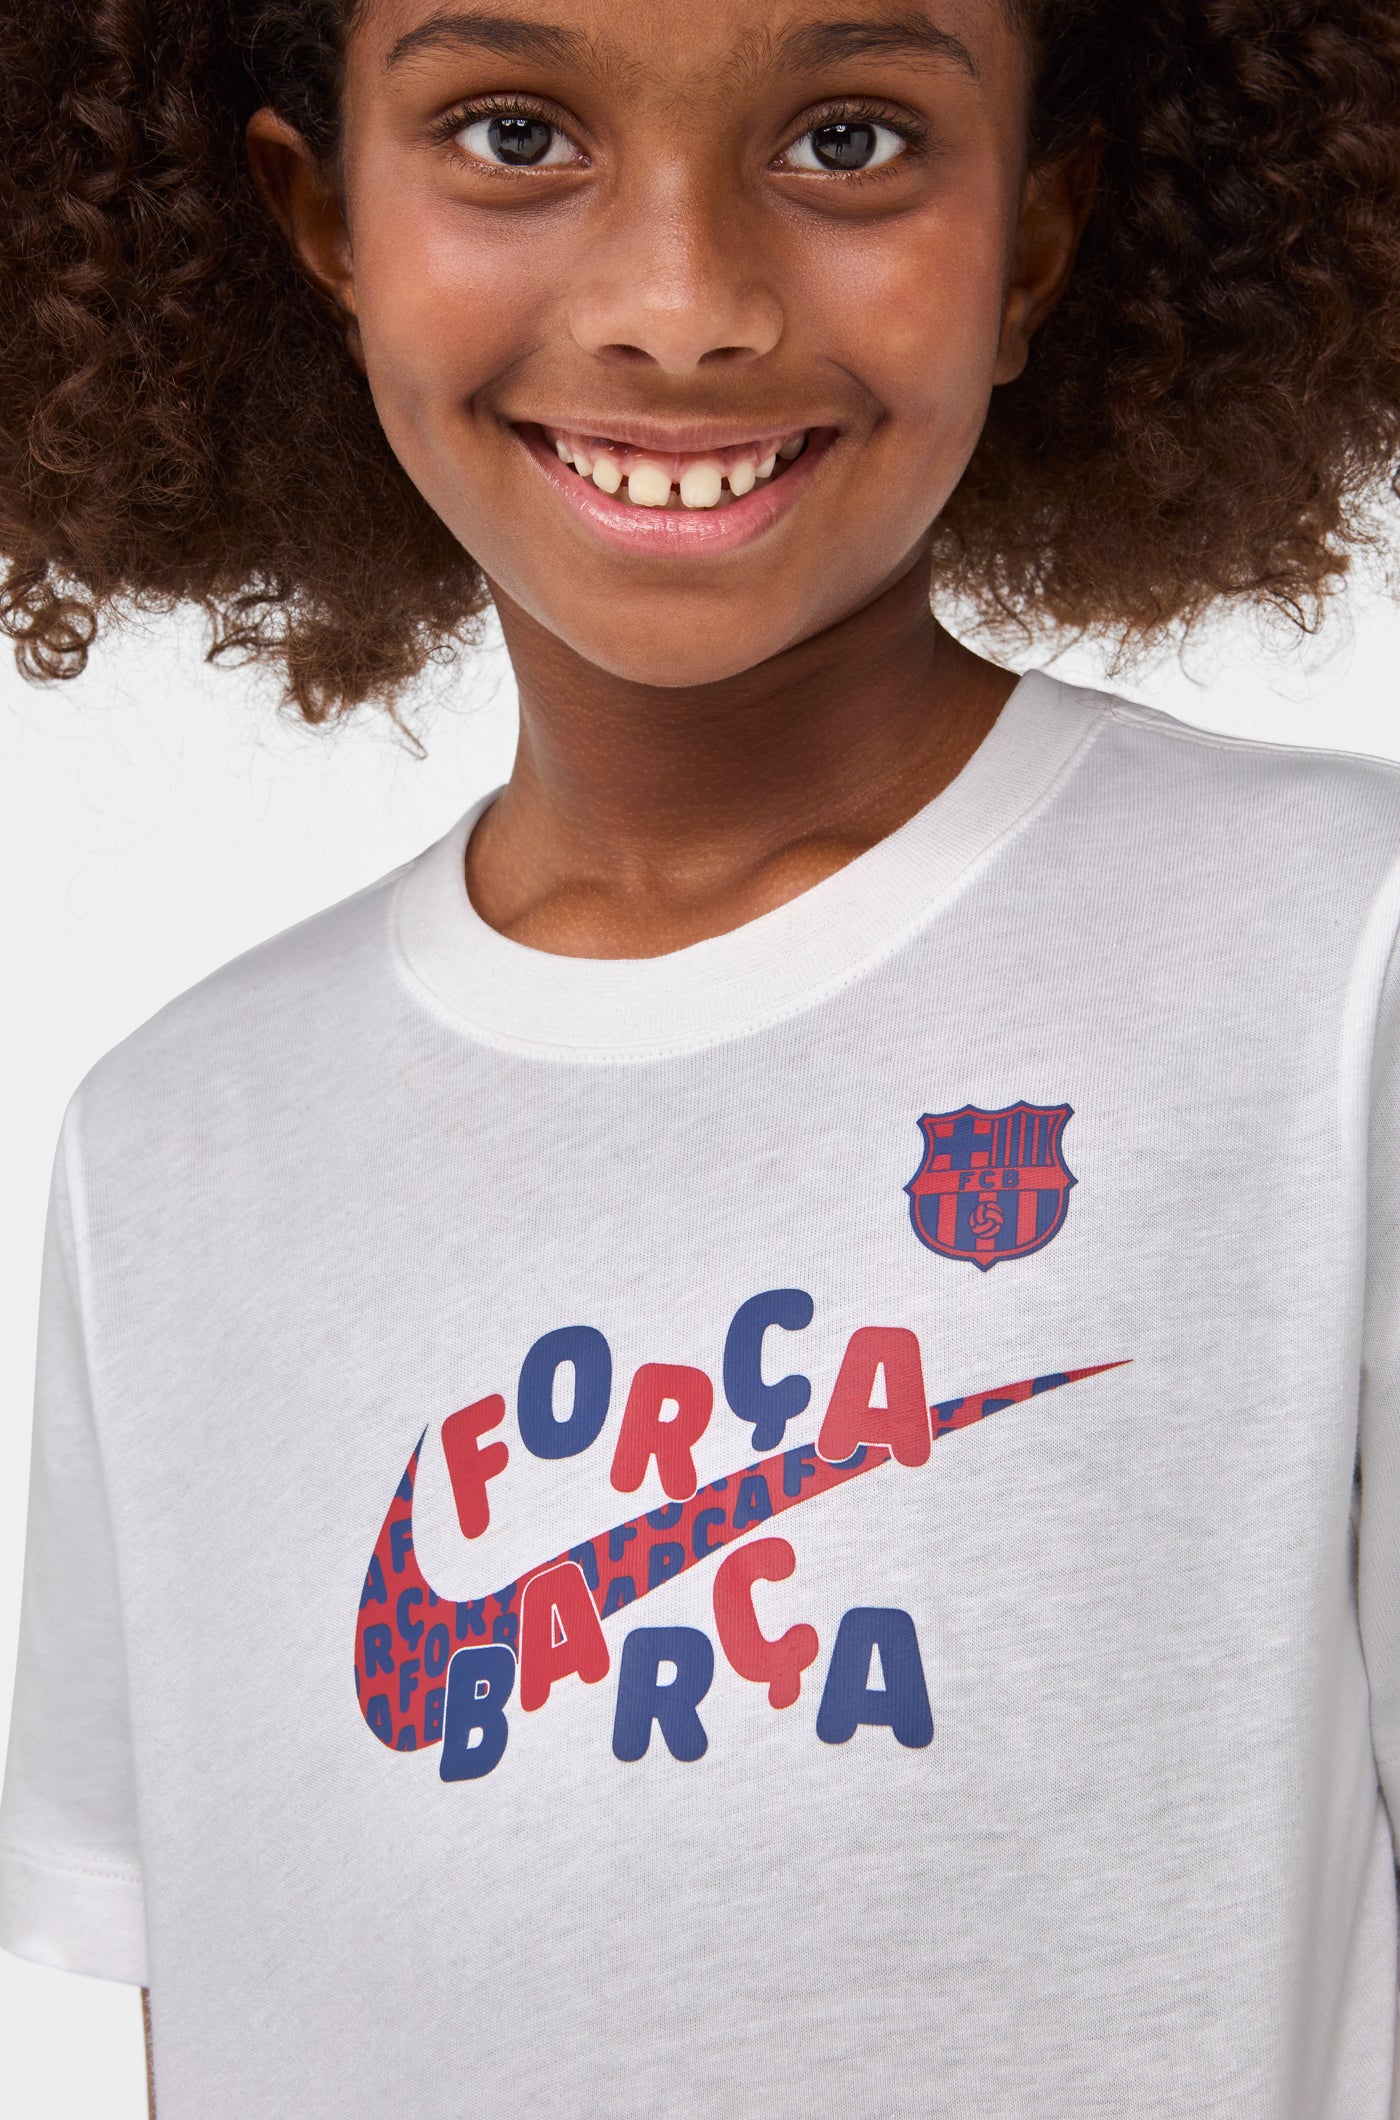 Camiseta Força Barça Barça Nike - Junior